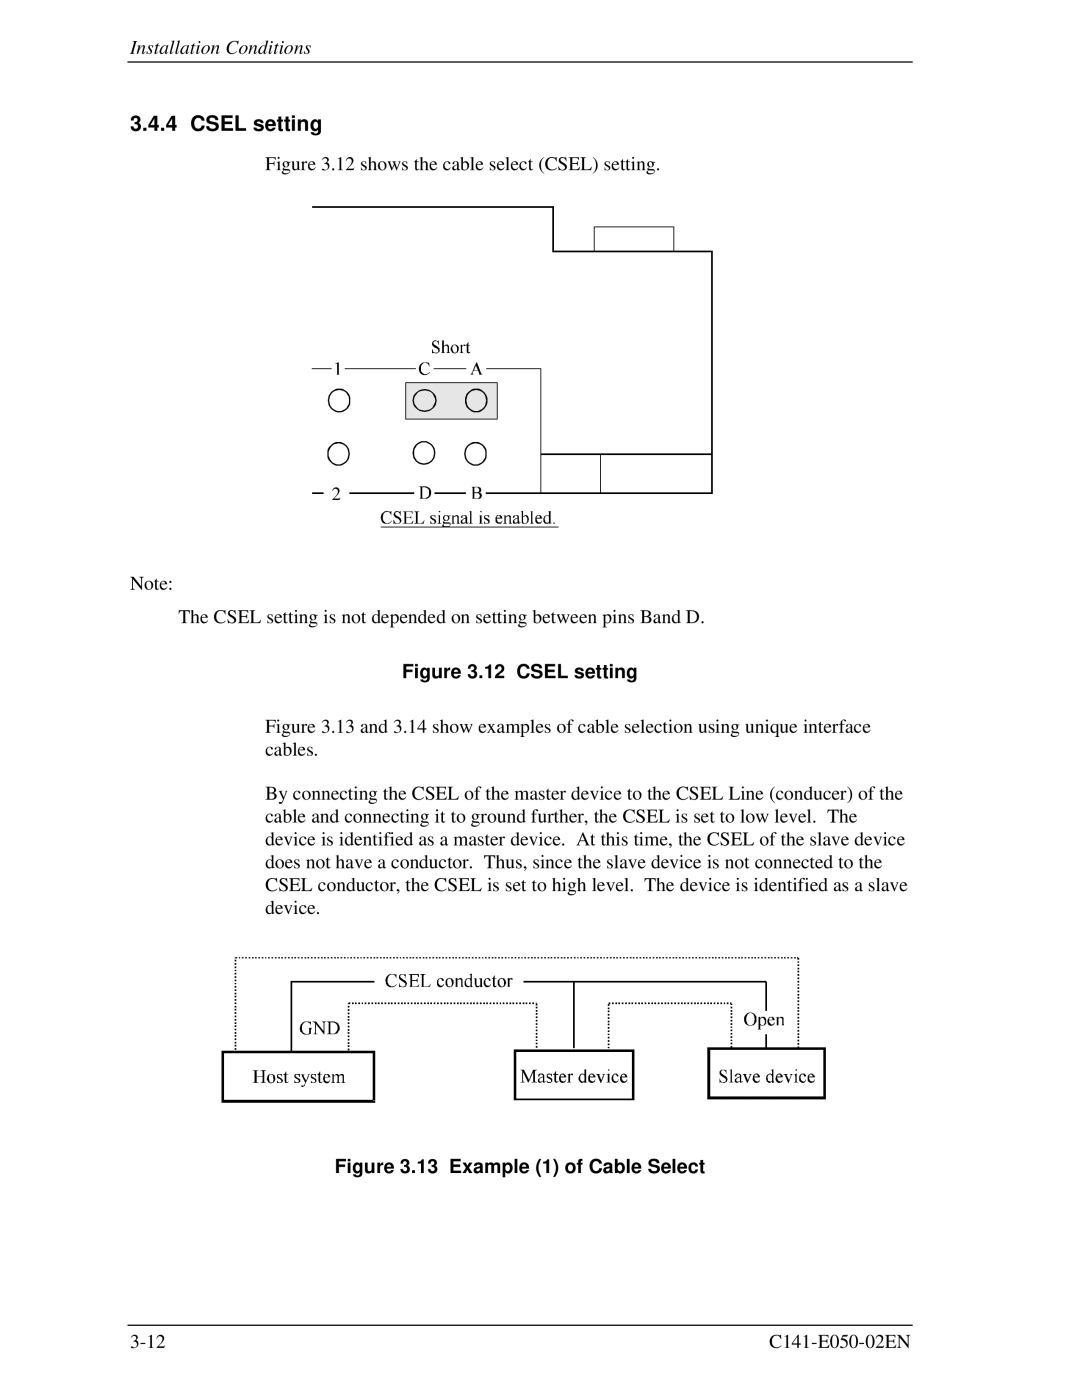 Fujitsu MHD2032AT, MHC2032AT, MHD2021AT, MHC2040AT manual Csel setting, Example 1 of Cable Select 